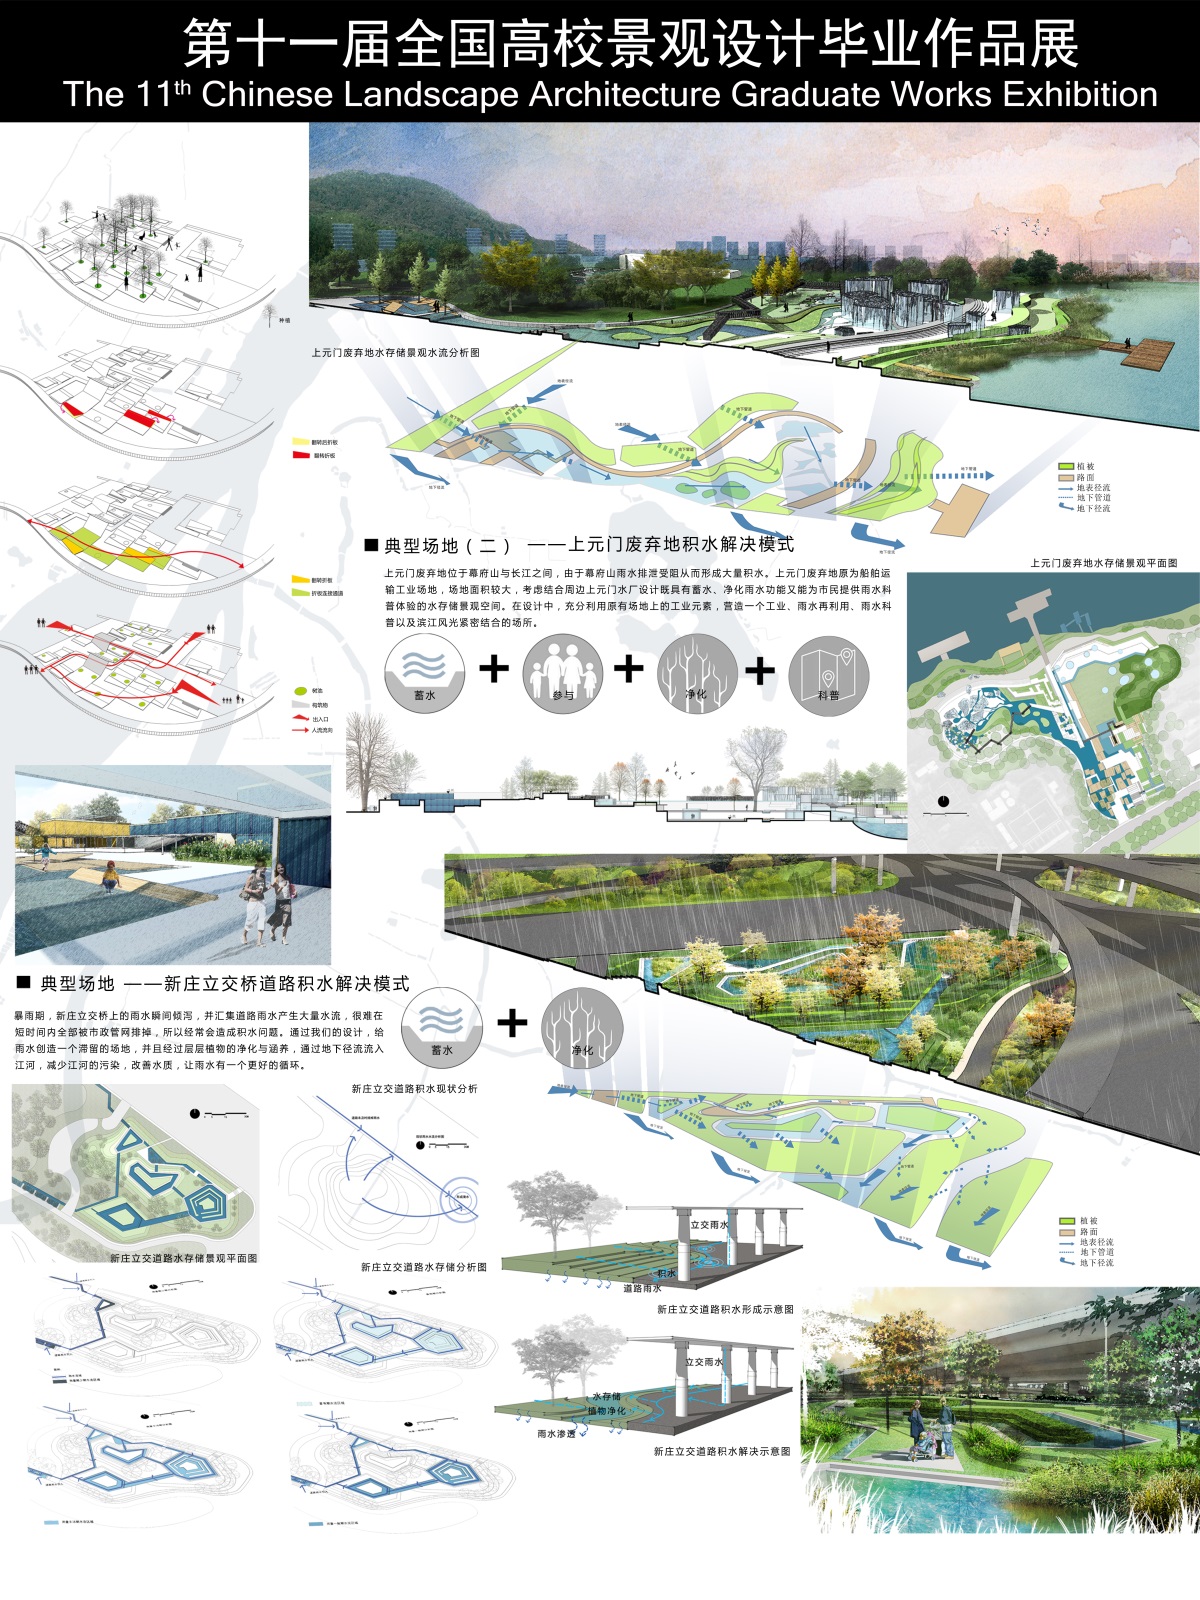 再生水之脉络——南京易淹区域水存储景观设计-2